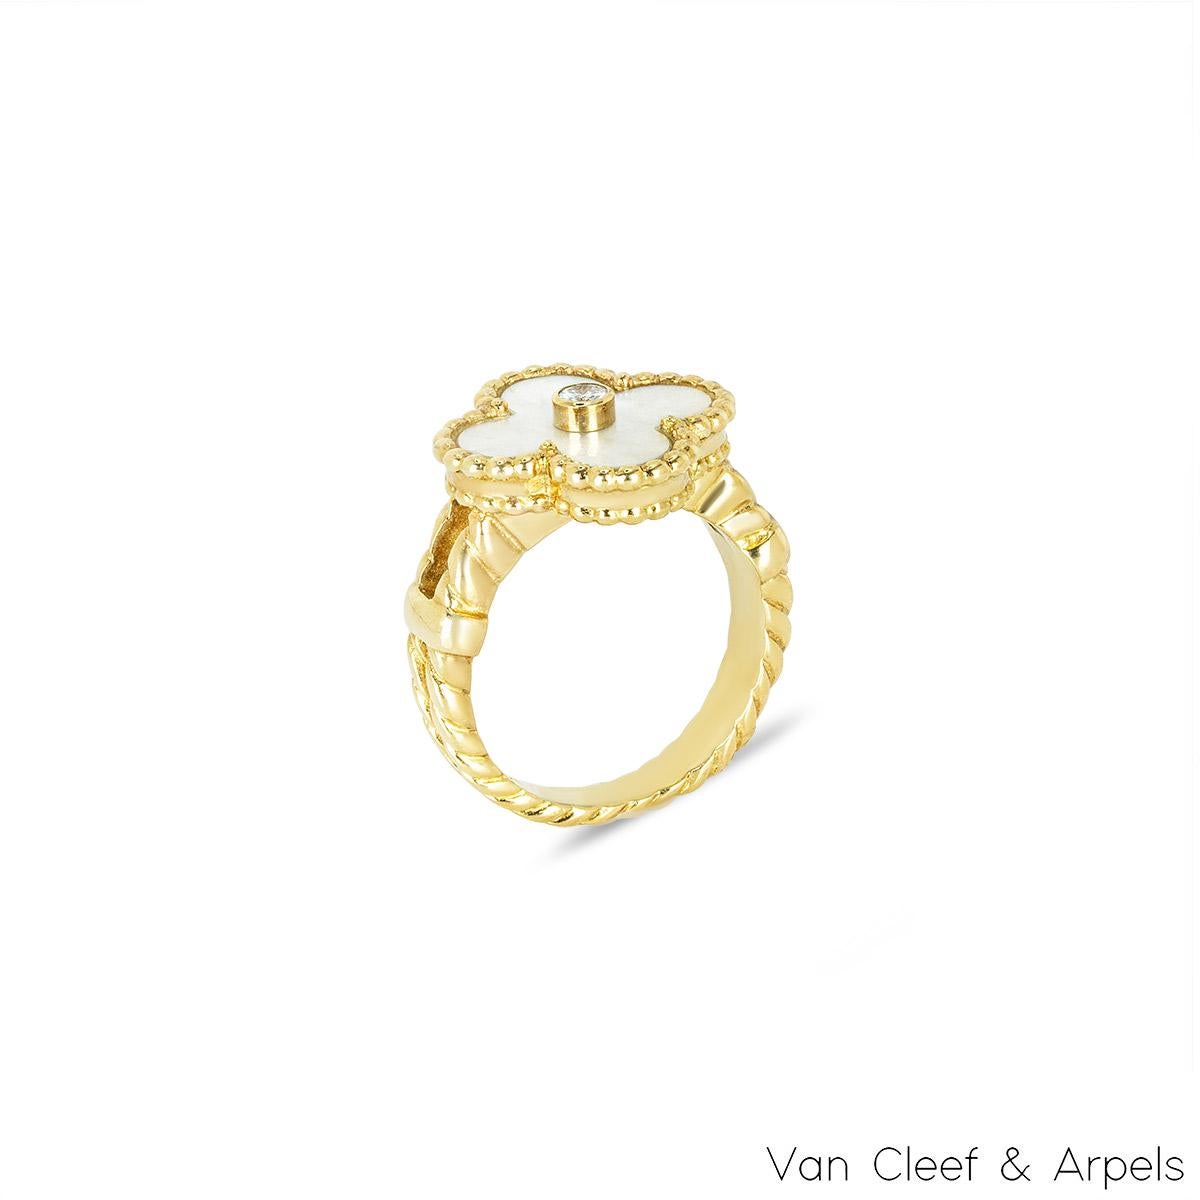 Ein schöner Ring aus 18 Karat Gelbgold von Van Cleef & Arpels aus der Collection'S Alhambra. Der Ring besteht aus einem vierblättrigen Kleeblattmotiv mit einer Perlmuttintarsie, ergänzt durch eine Perlenkante und einen runden Diamanten im